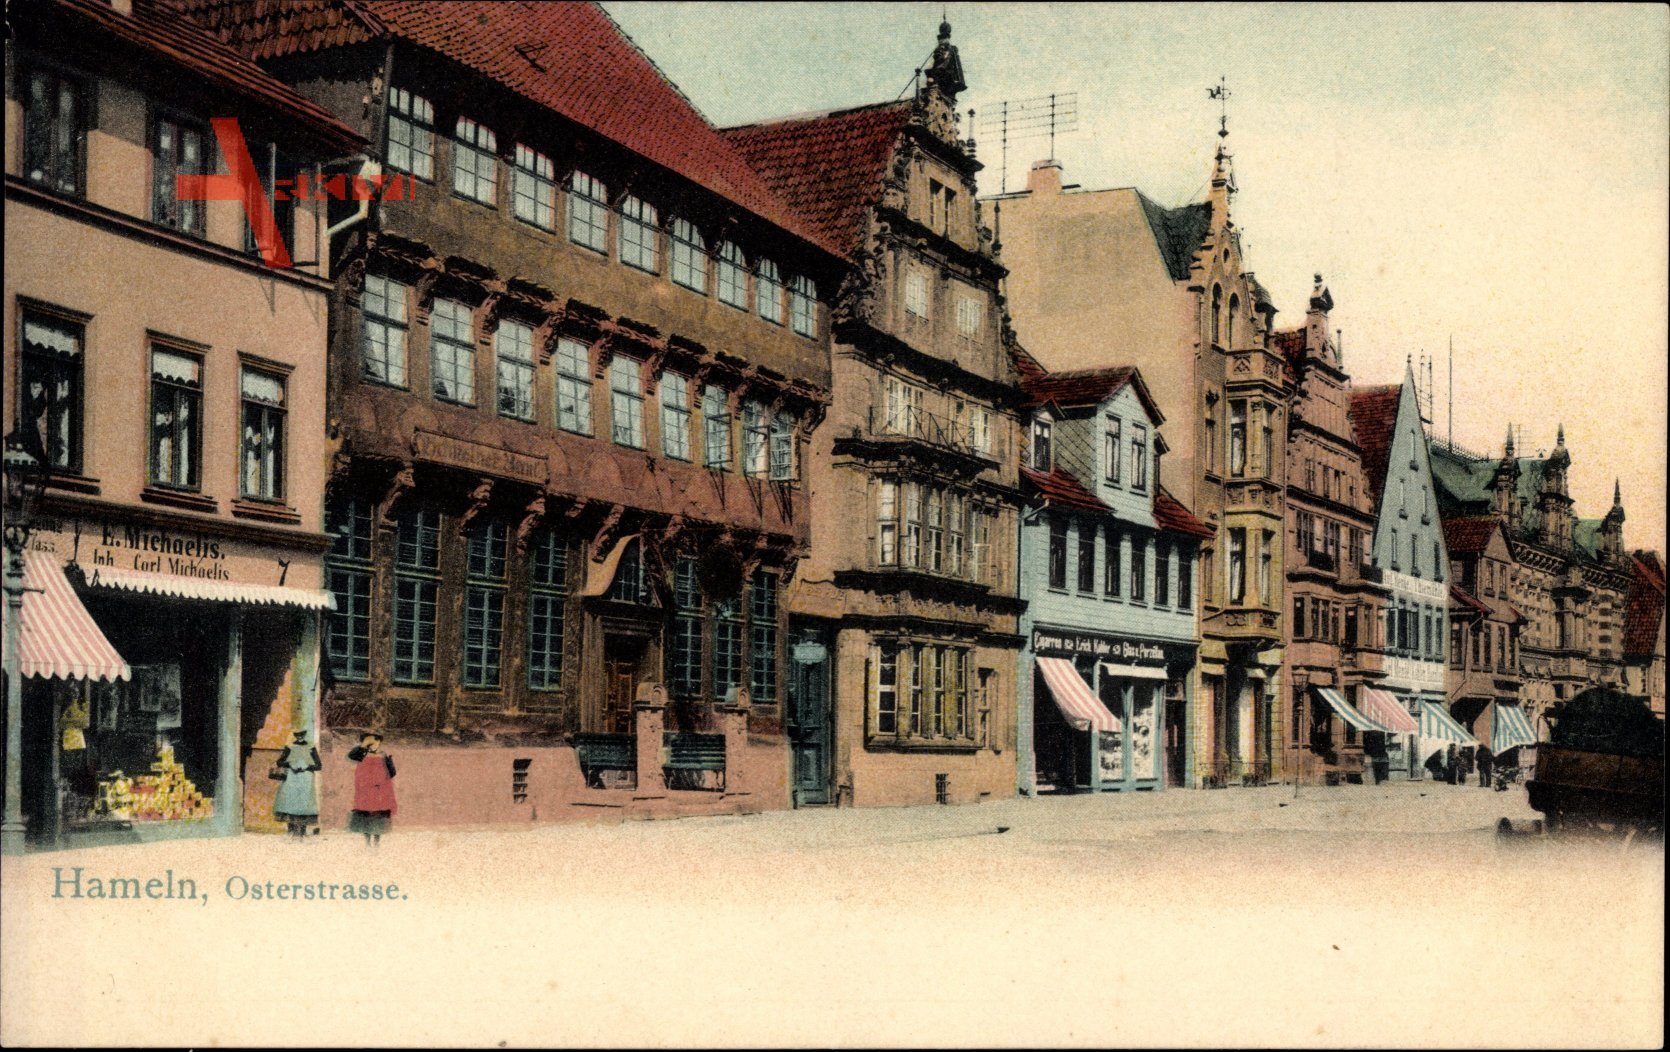 Hameln in Niedersachsen, Geschäft Michaelis, Osterstraße, Giebelhäuser